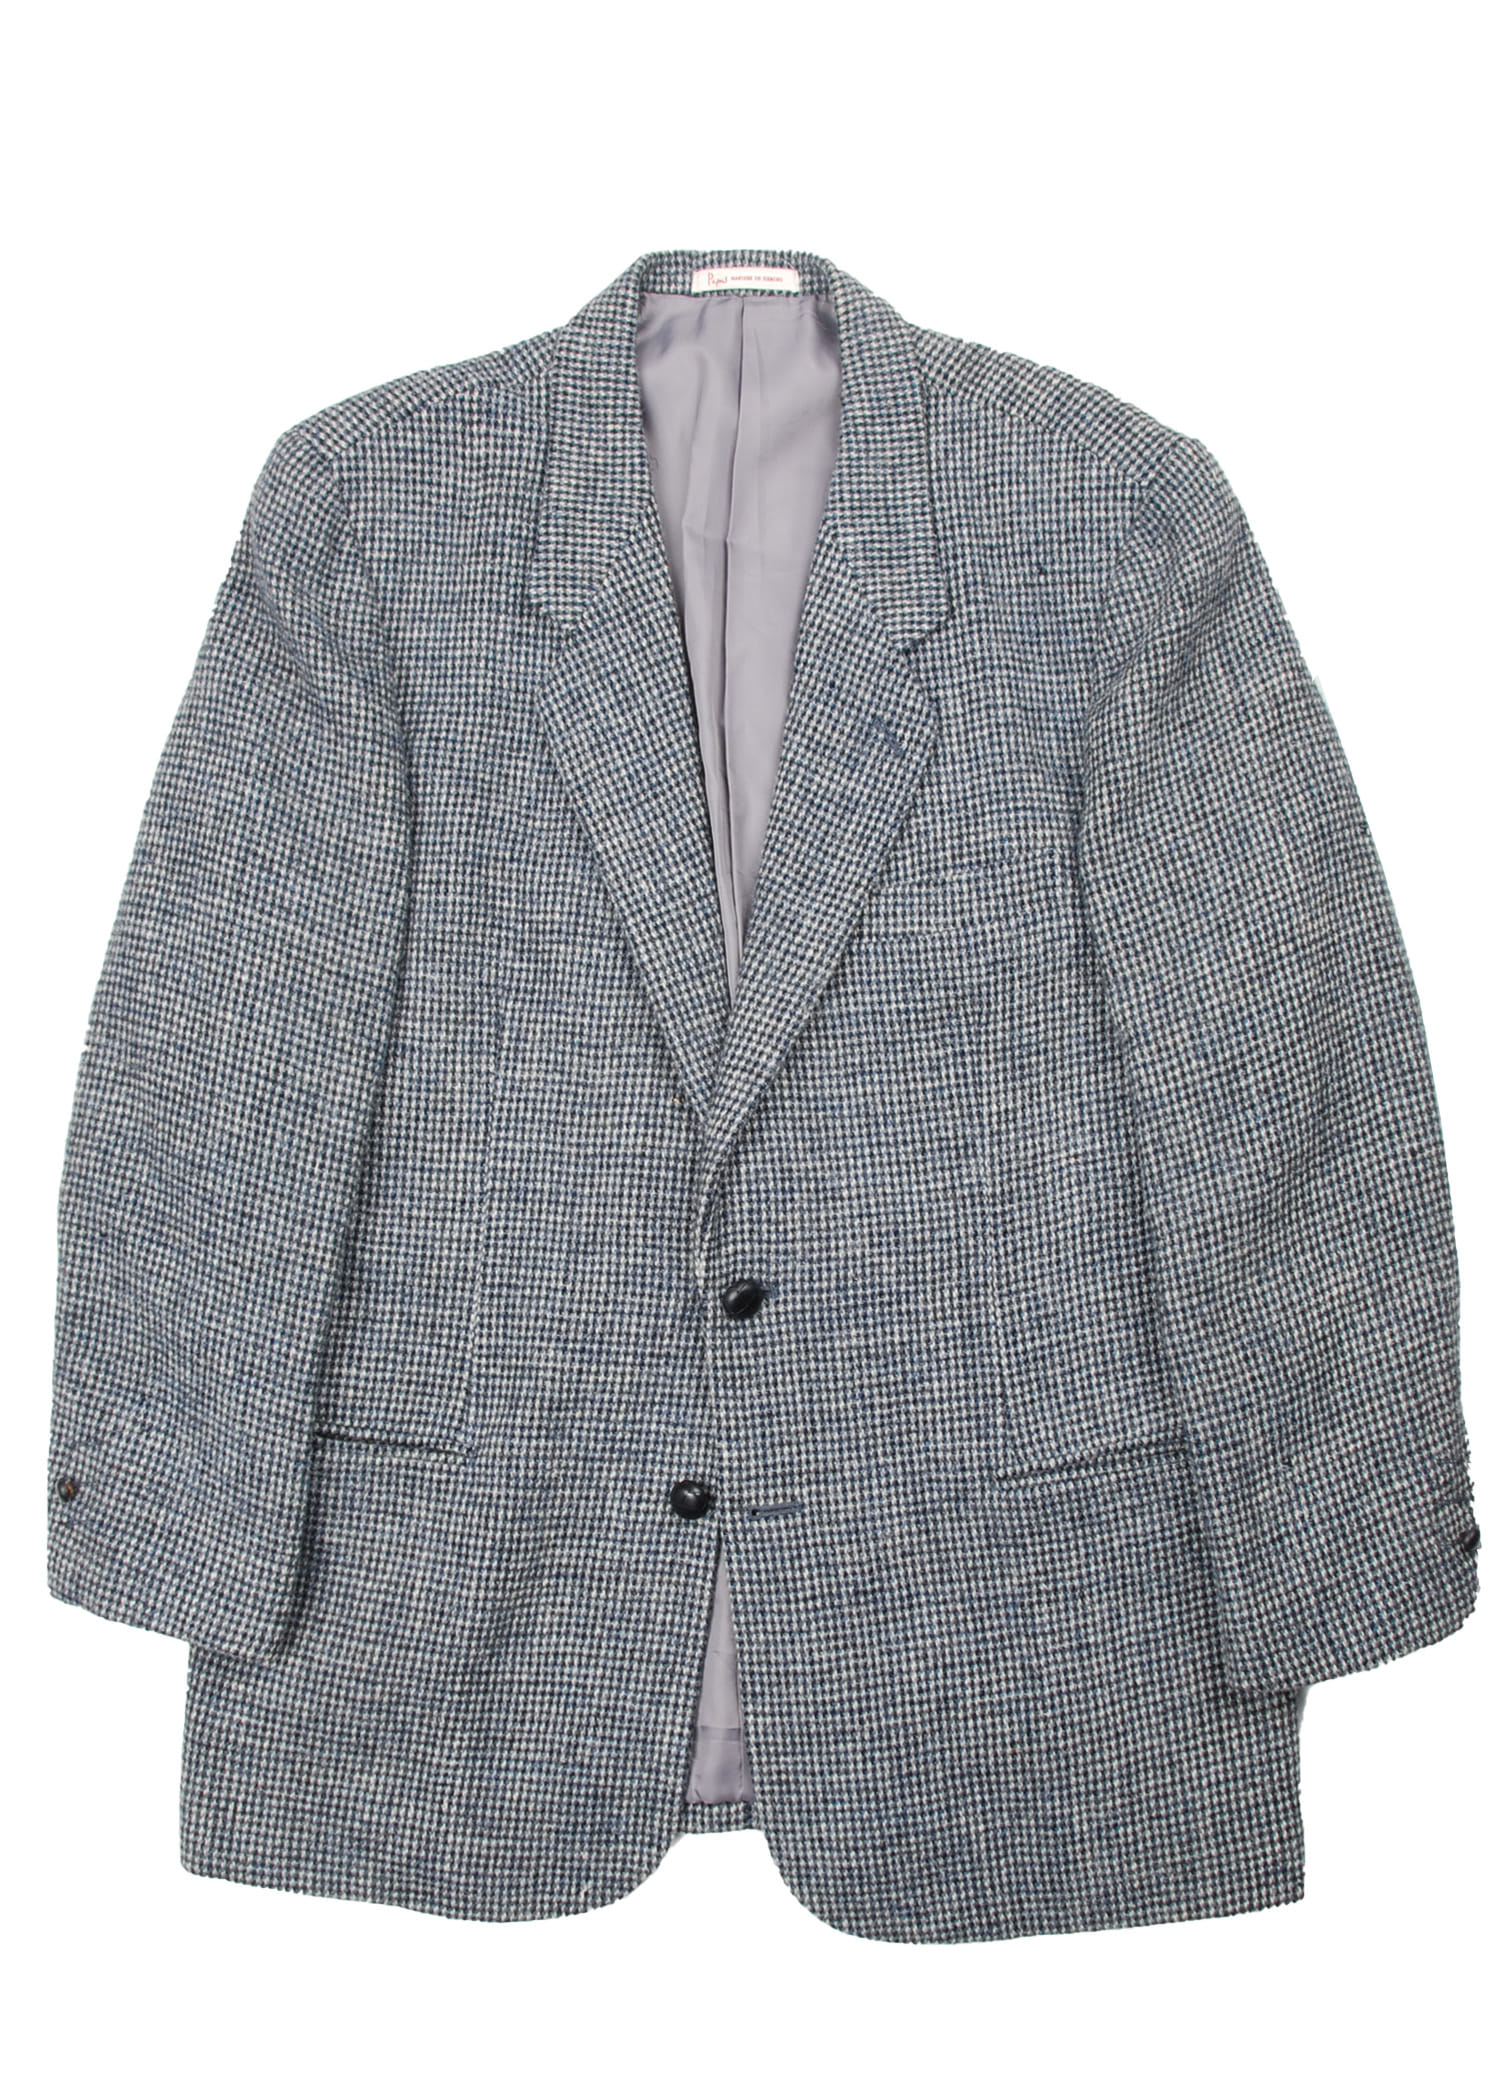 Papas tweed jacket ( fabric by Harris Tweed )